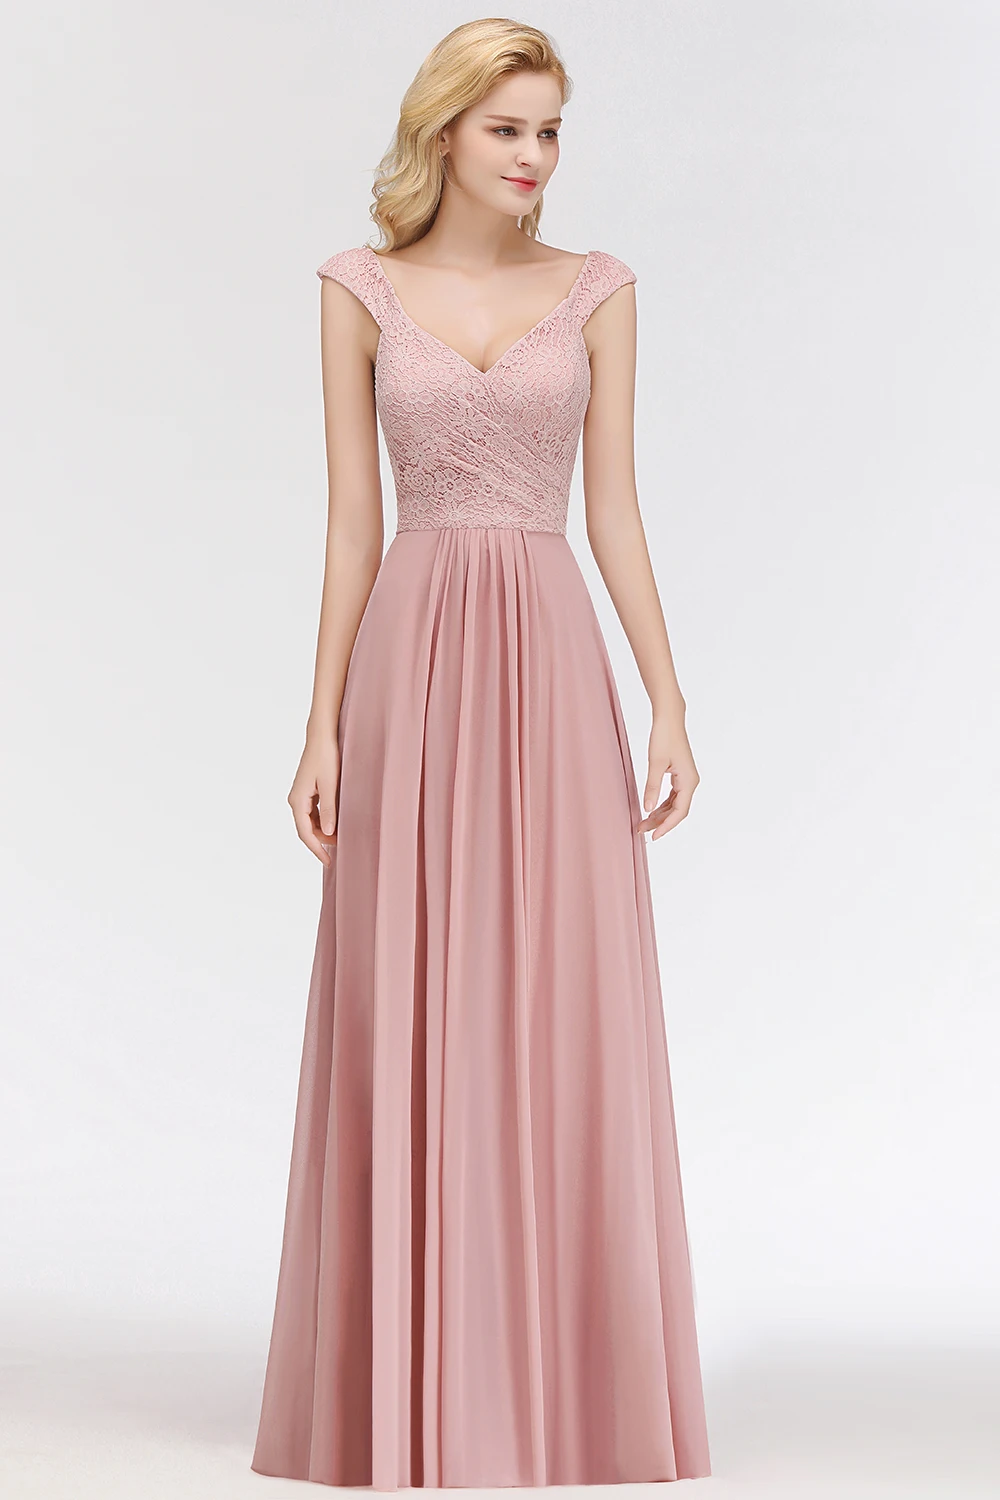 Vestido de festa longo, сексуальные платья с v-образным вырезом, розовые кружевные вечерние платья с длинными рукавами, шифоновые платья для выпускного в деловом стиле Вечерние платья